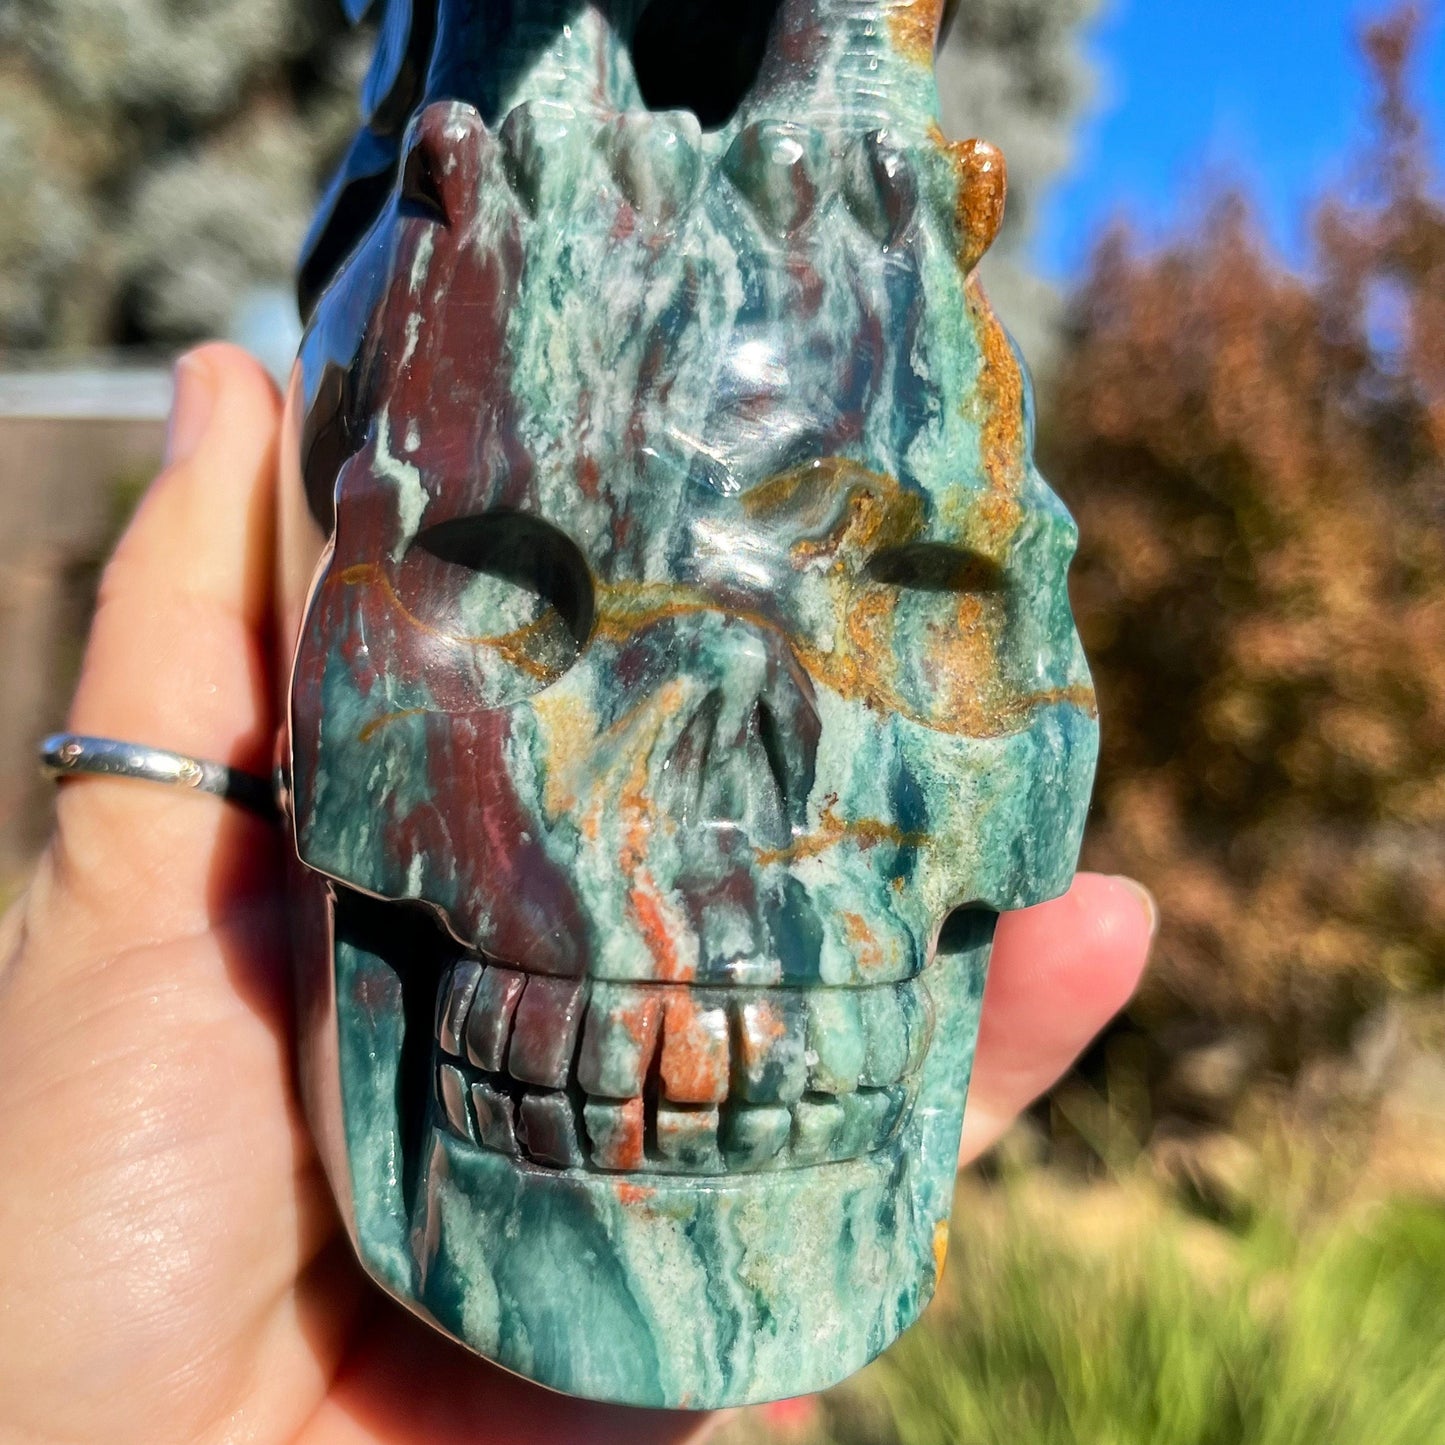 XL Ocean Jasper Eagle Skull | Colorful Ocean Jasper Skull with Eagle | Carved Crystal Skull | OJ Skull | Crystal Skull | Human Skull Art